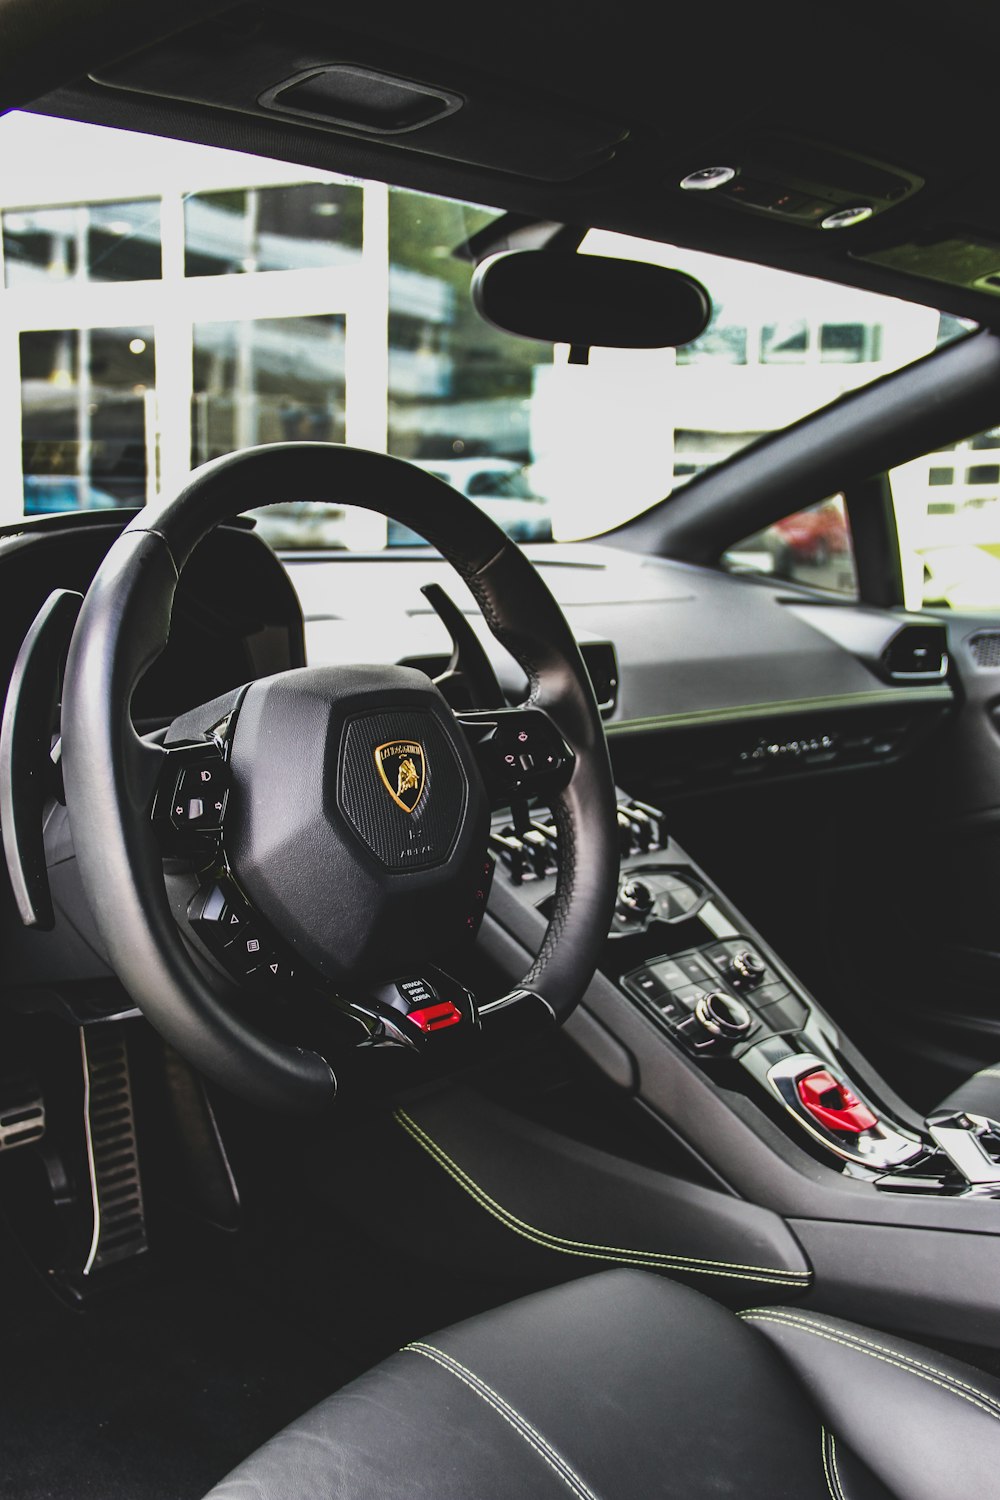 Interior del vehículo Lamborghini negro durante el día